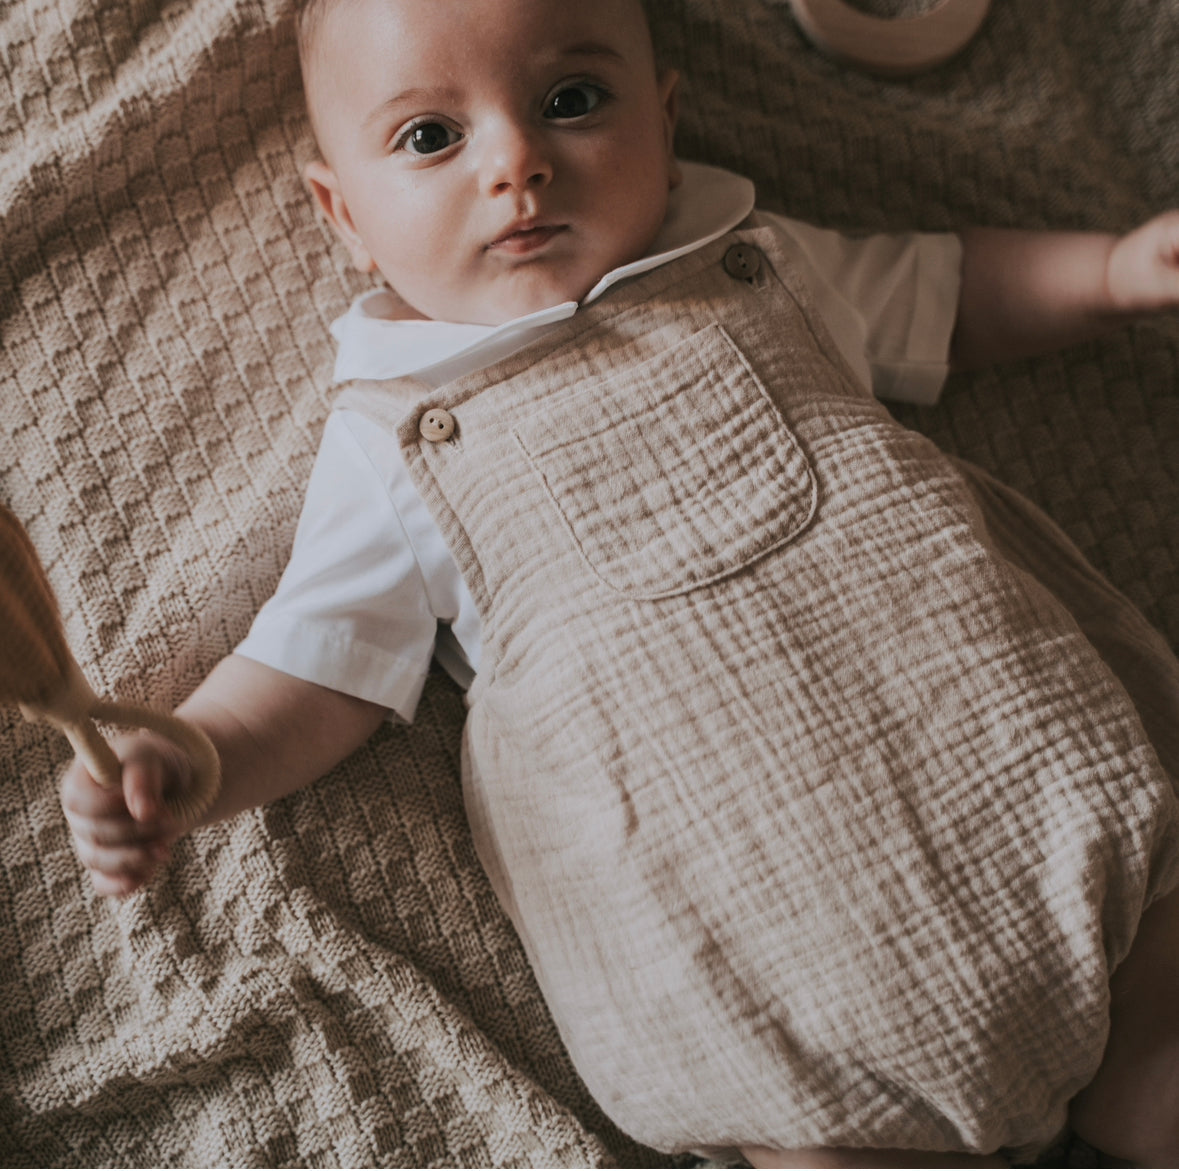 Salopette in cotone con Camicia manica corta - Baby Clothes - Baby Rainbow Shop - P.IVA 04847500230